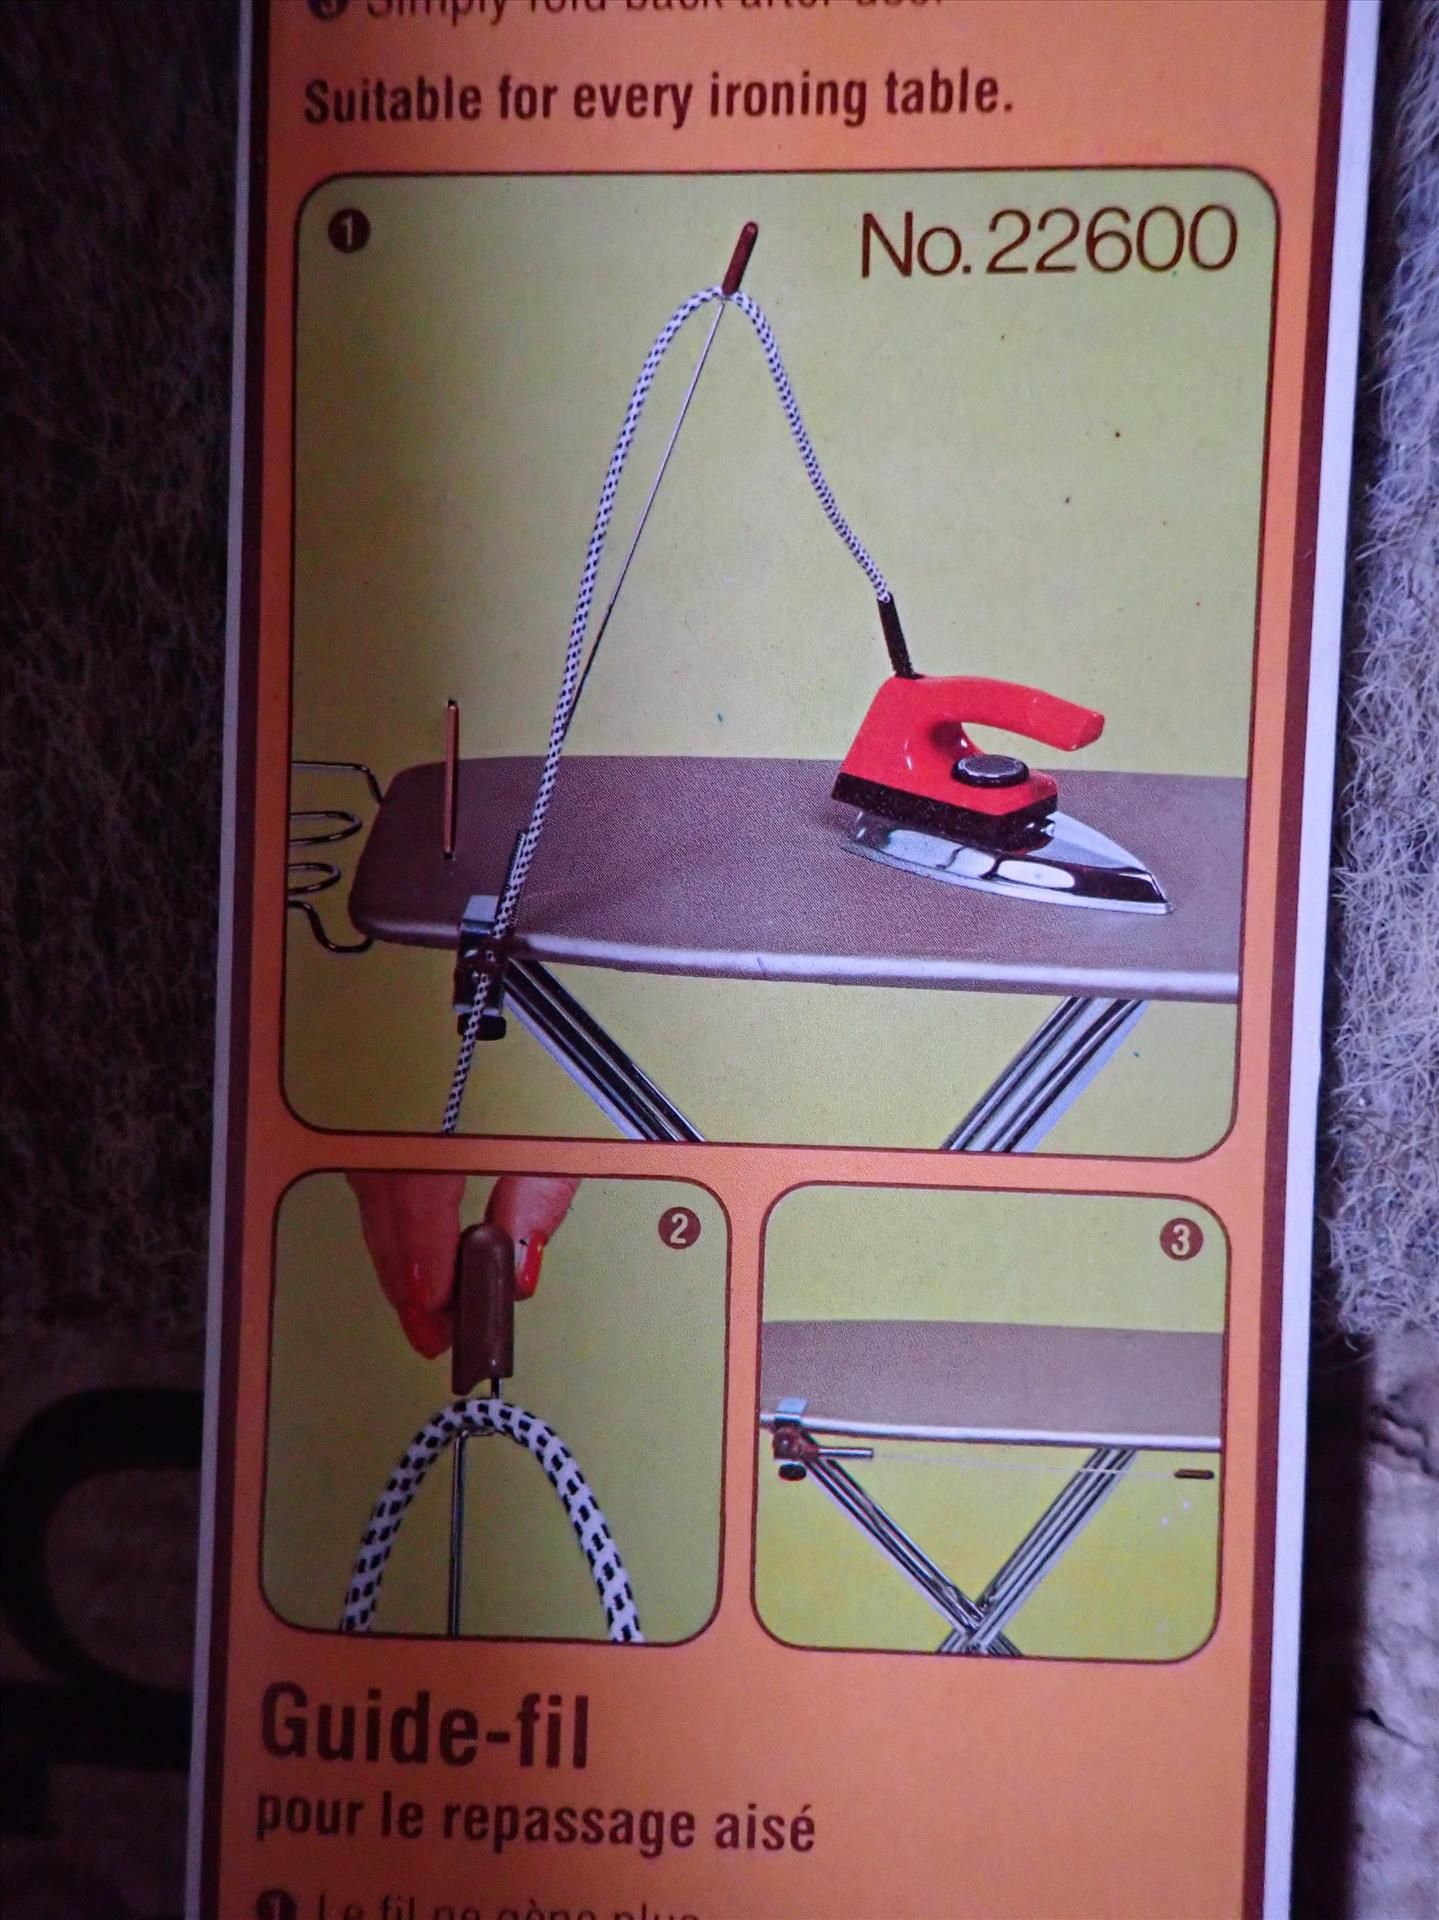 (4) FRZ Swing ironing board flex cord holders